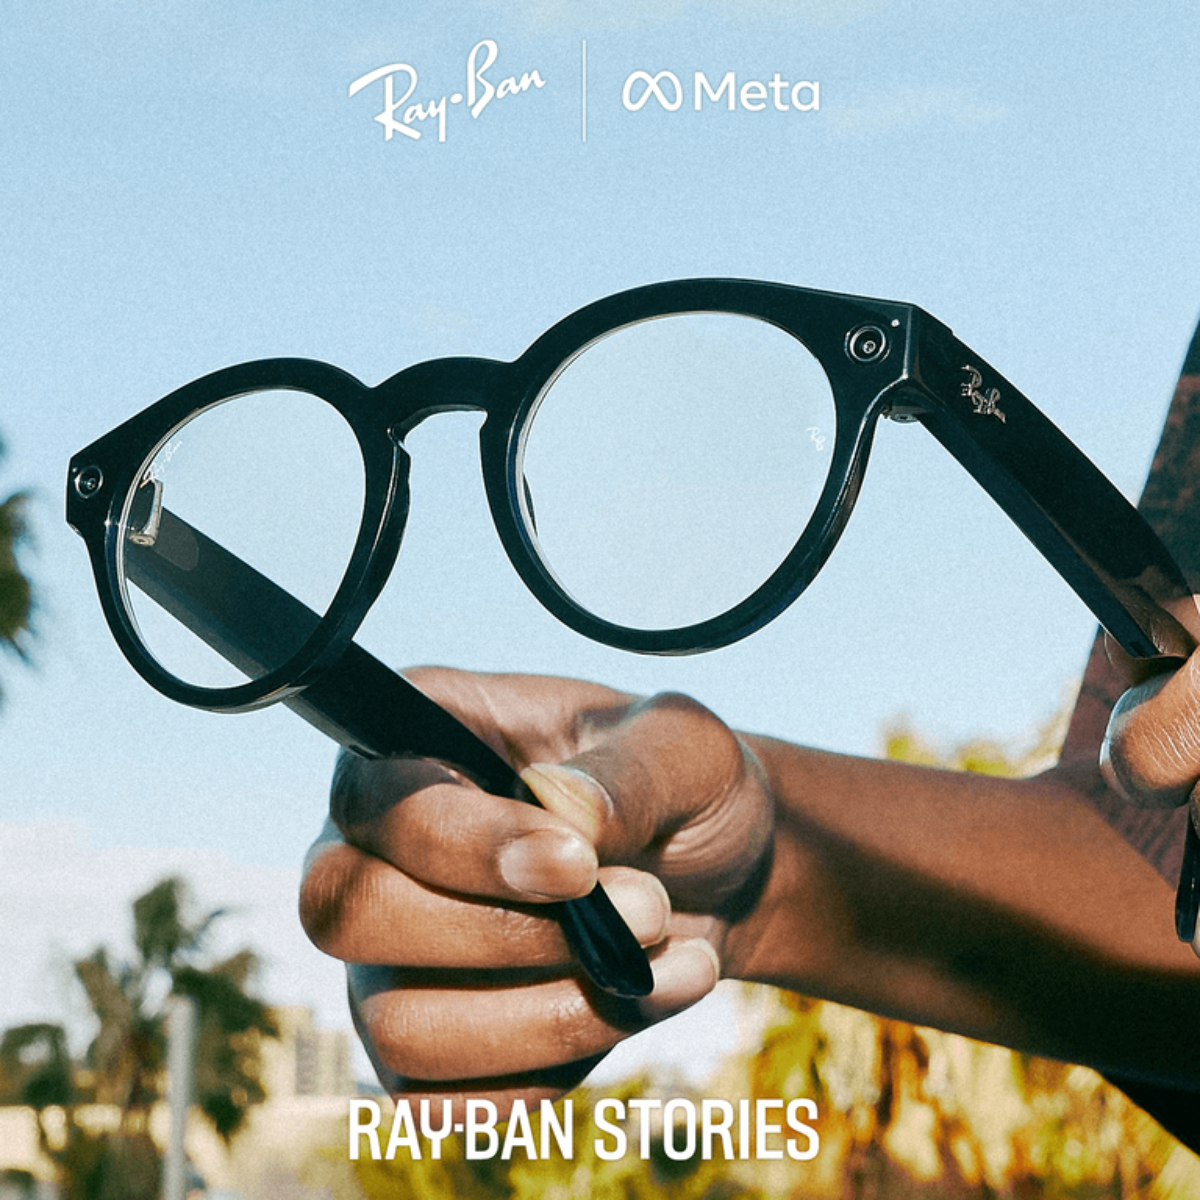 Conheça os óculos da Ray-Ban e da Meta que agora funcionam com WhatsApp